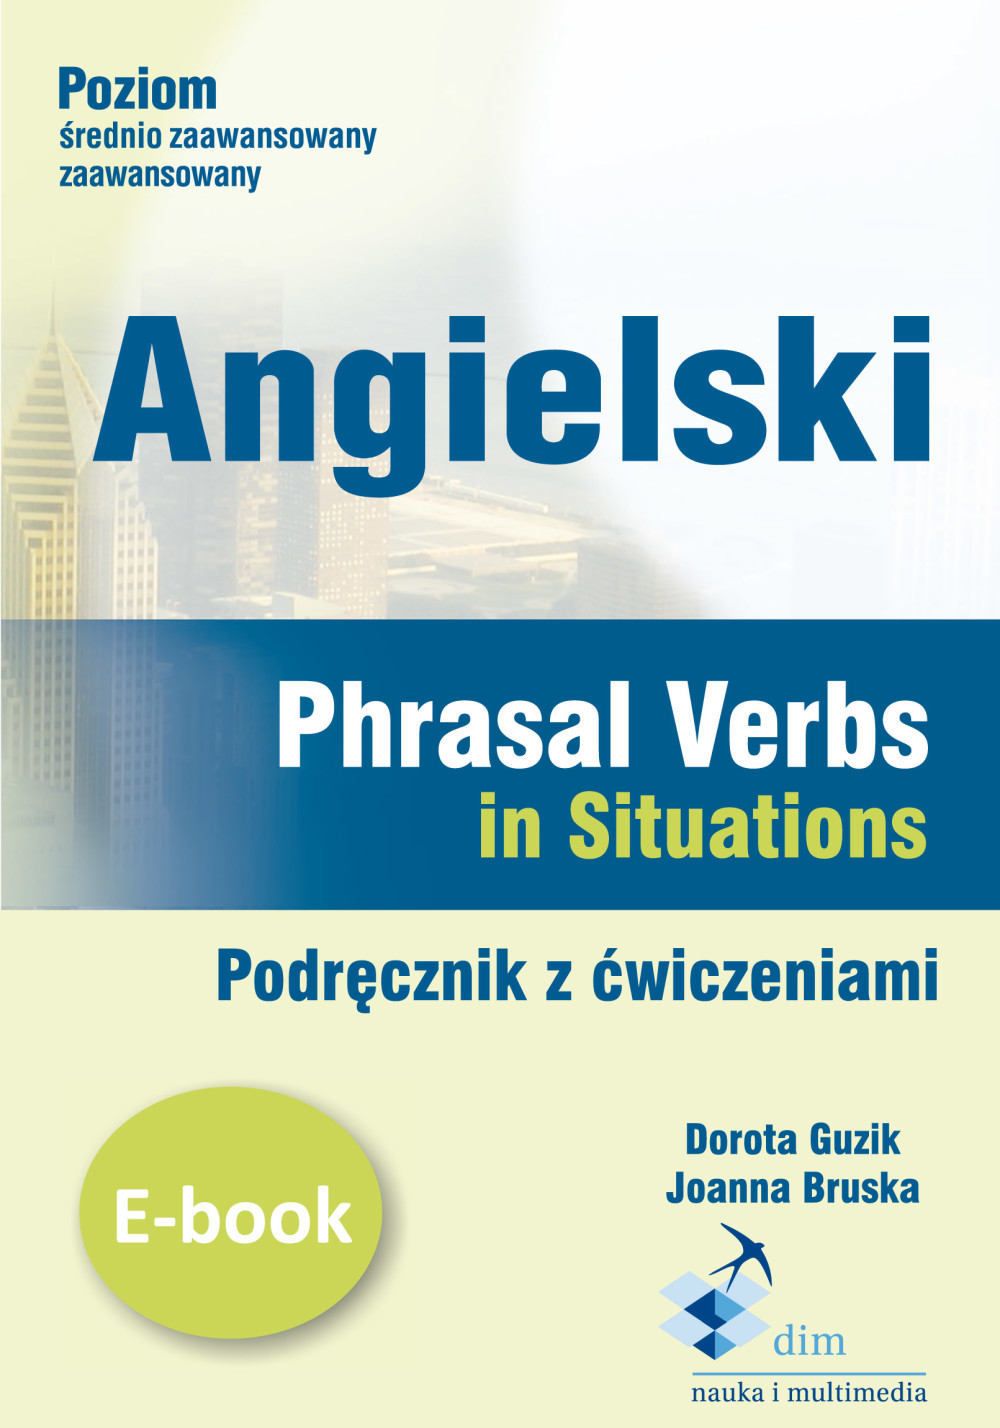 :: Angielski. Phrasal verbs in Situations. Podręcznik z ćwiczeniami - e-book ::